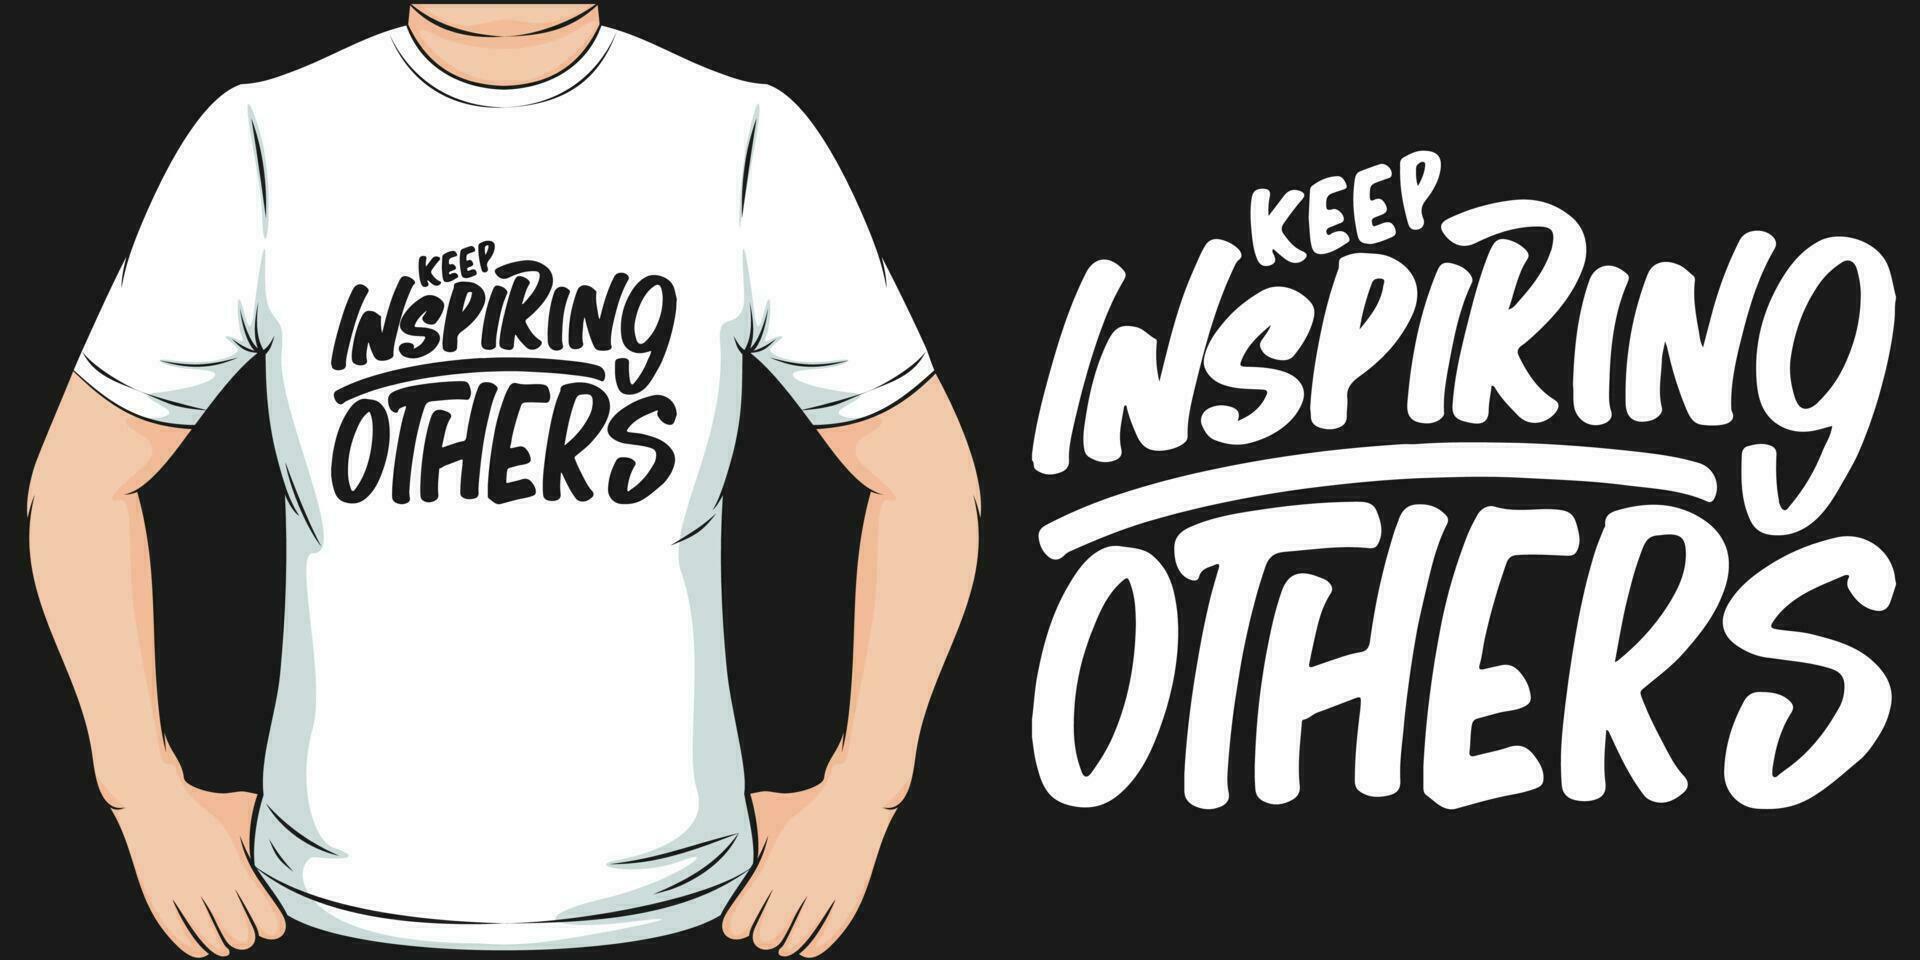 ha kvar inspirerande andra, motiverande Citat t-shirt design. vektor